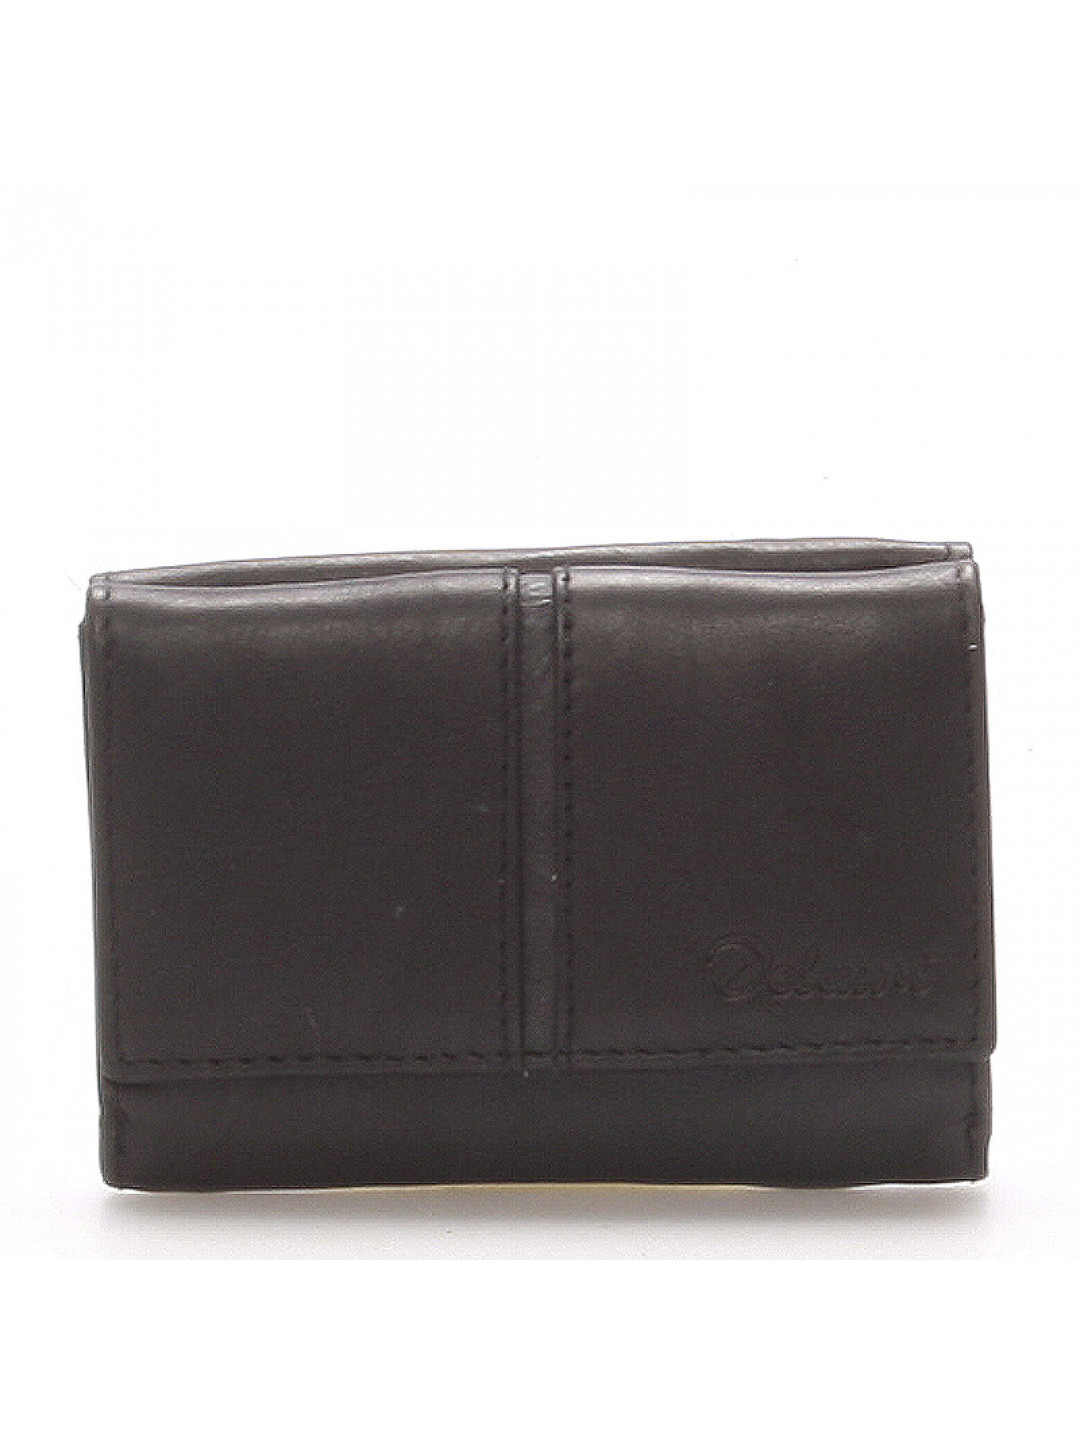 Kožená černá peněženka – Delami 9386